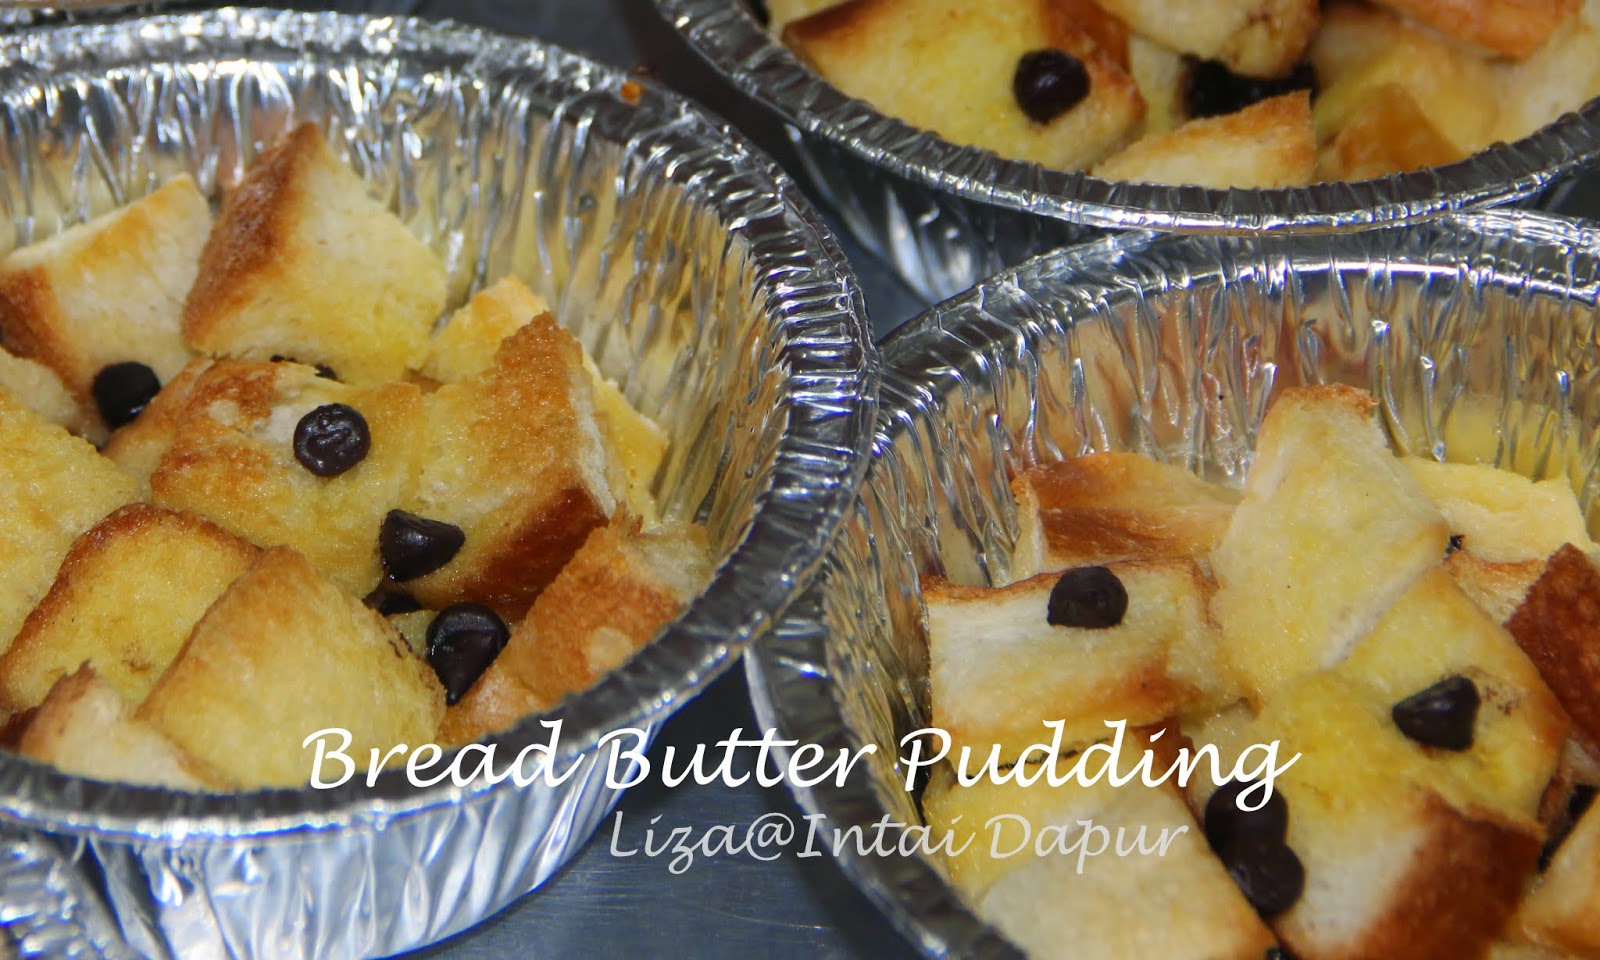 INTAI DAPUR: Bread Butter Pudding